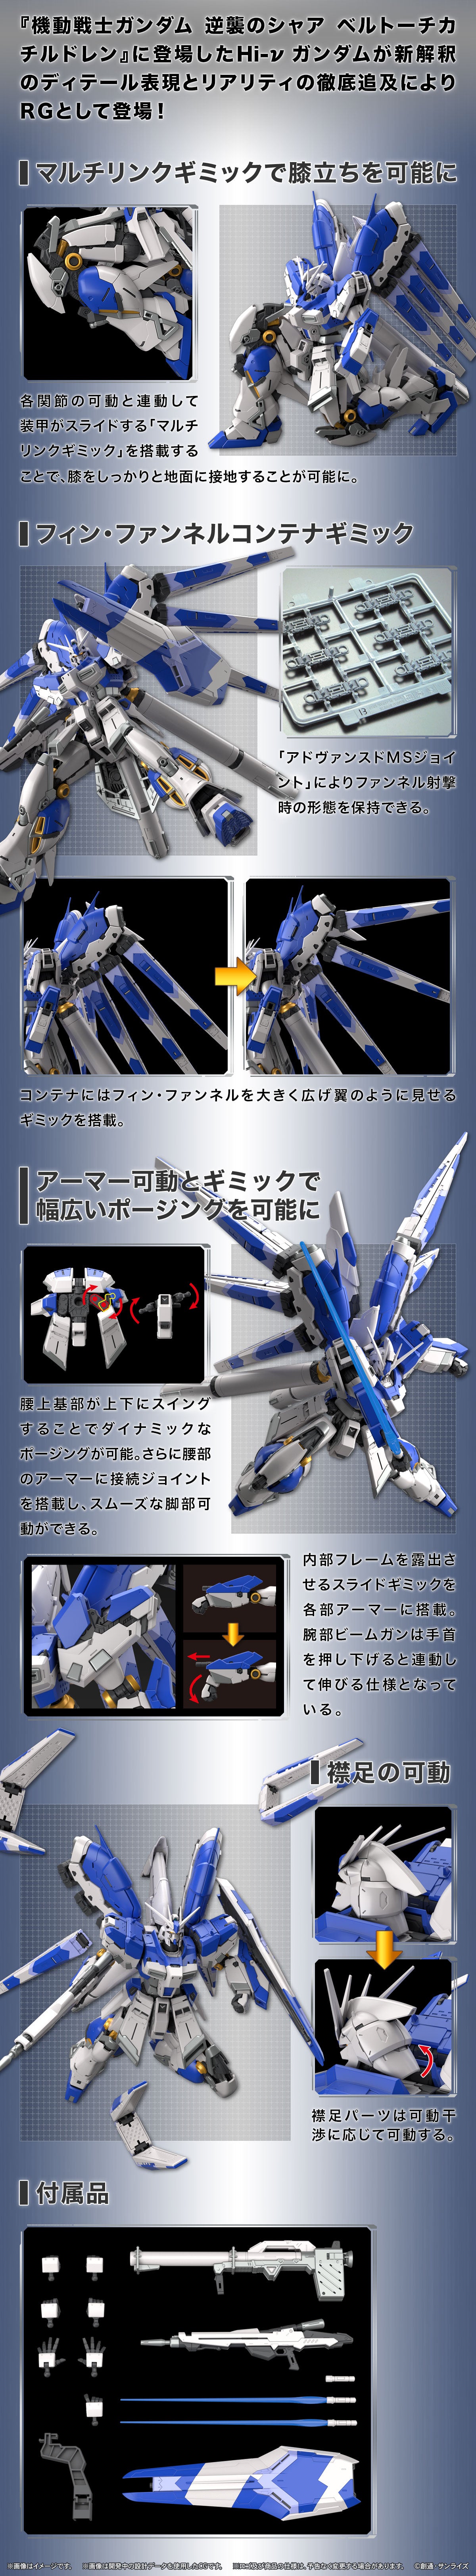 RG Hi-v Gundam